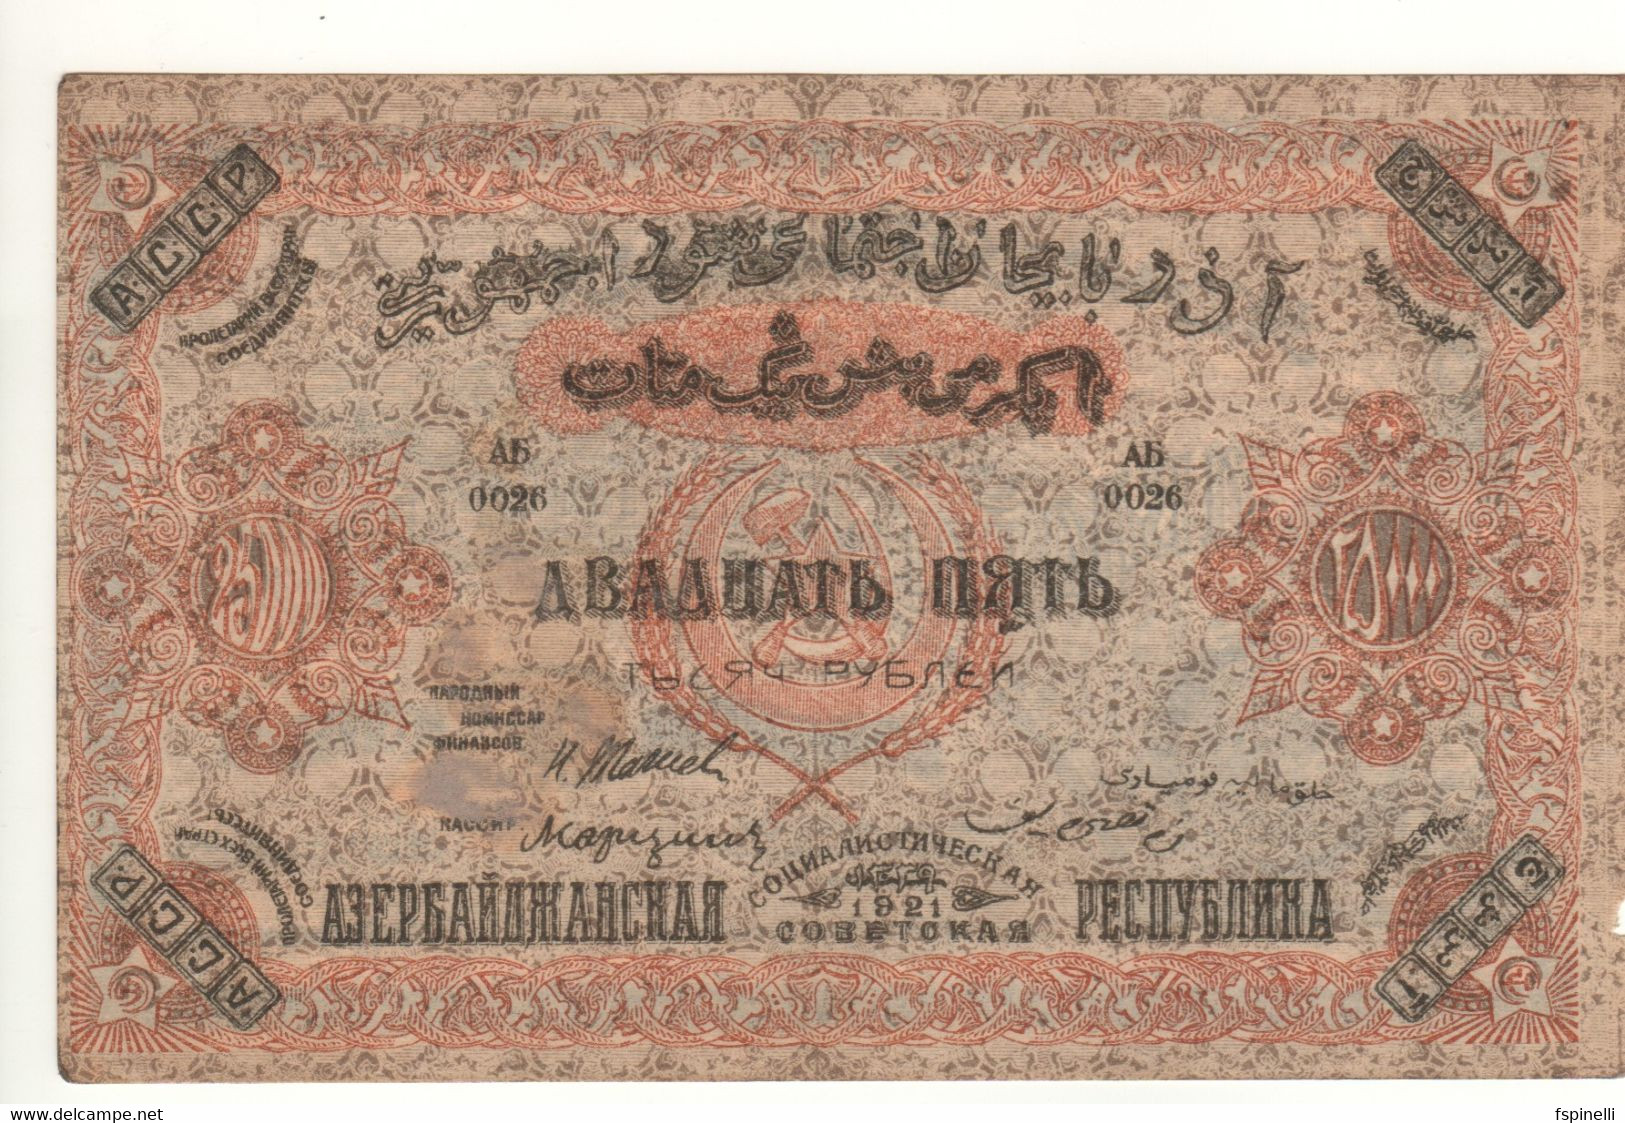 AZERBAIJAN  25'000 Rubley/Manat  PS715a  1921   RUSSIA  (Socialist Soviet Republic) - Azerbaïjan